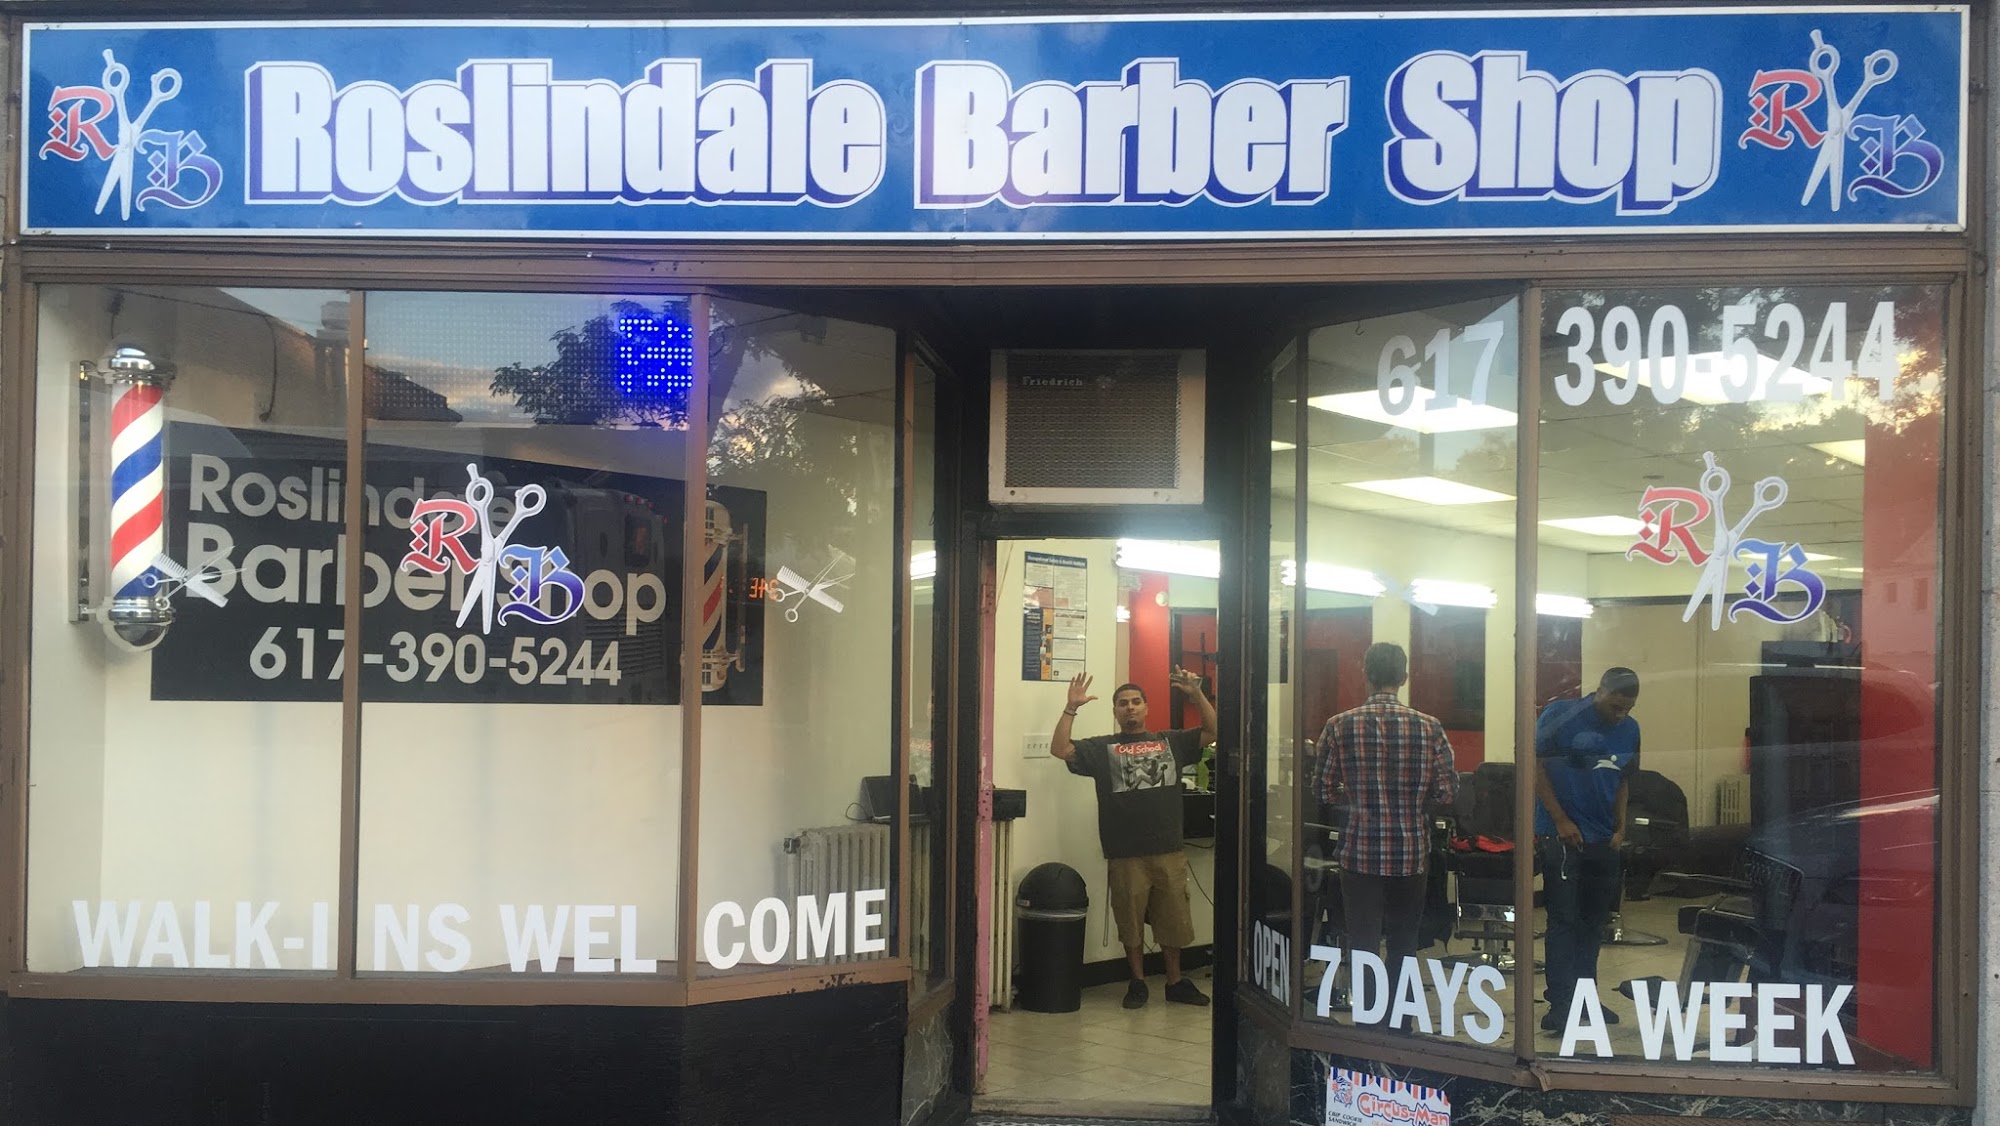 Roslindale Barbershop